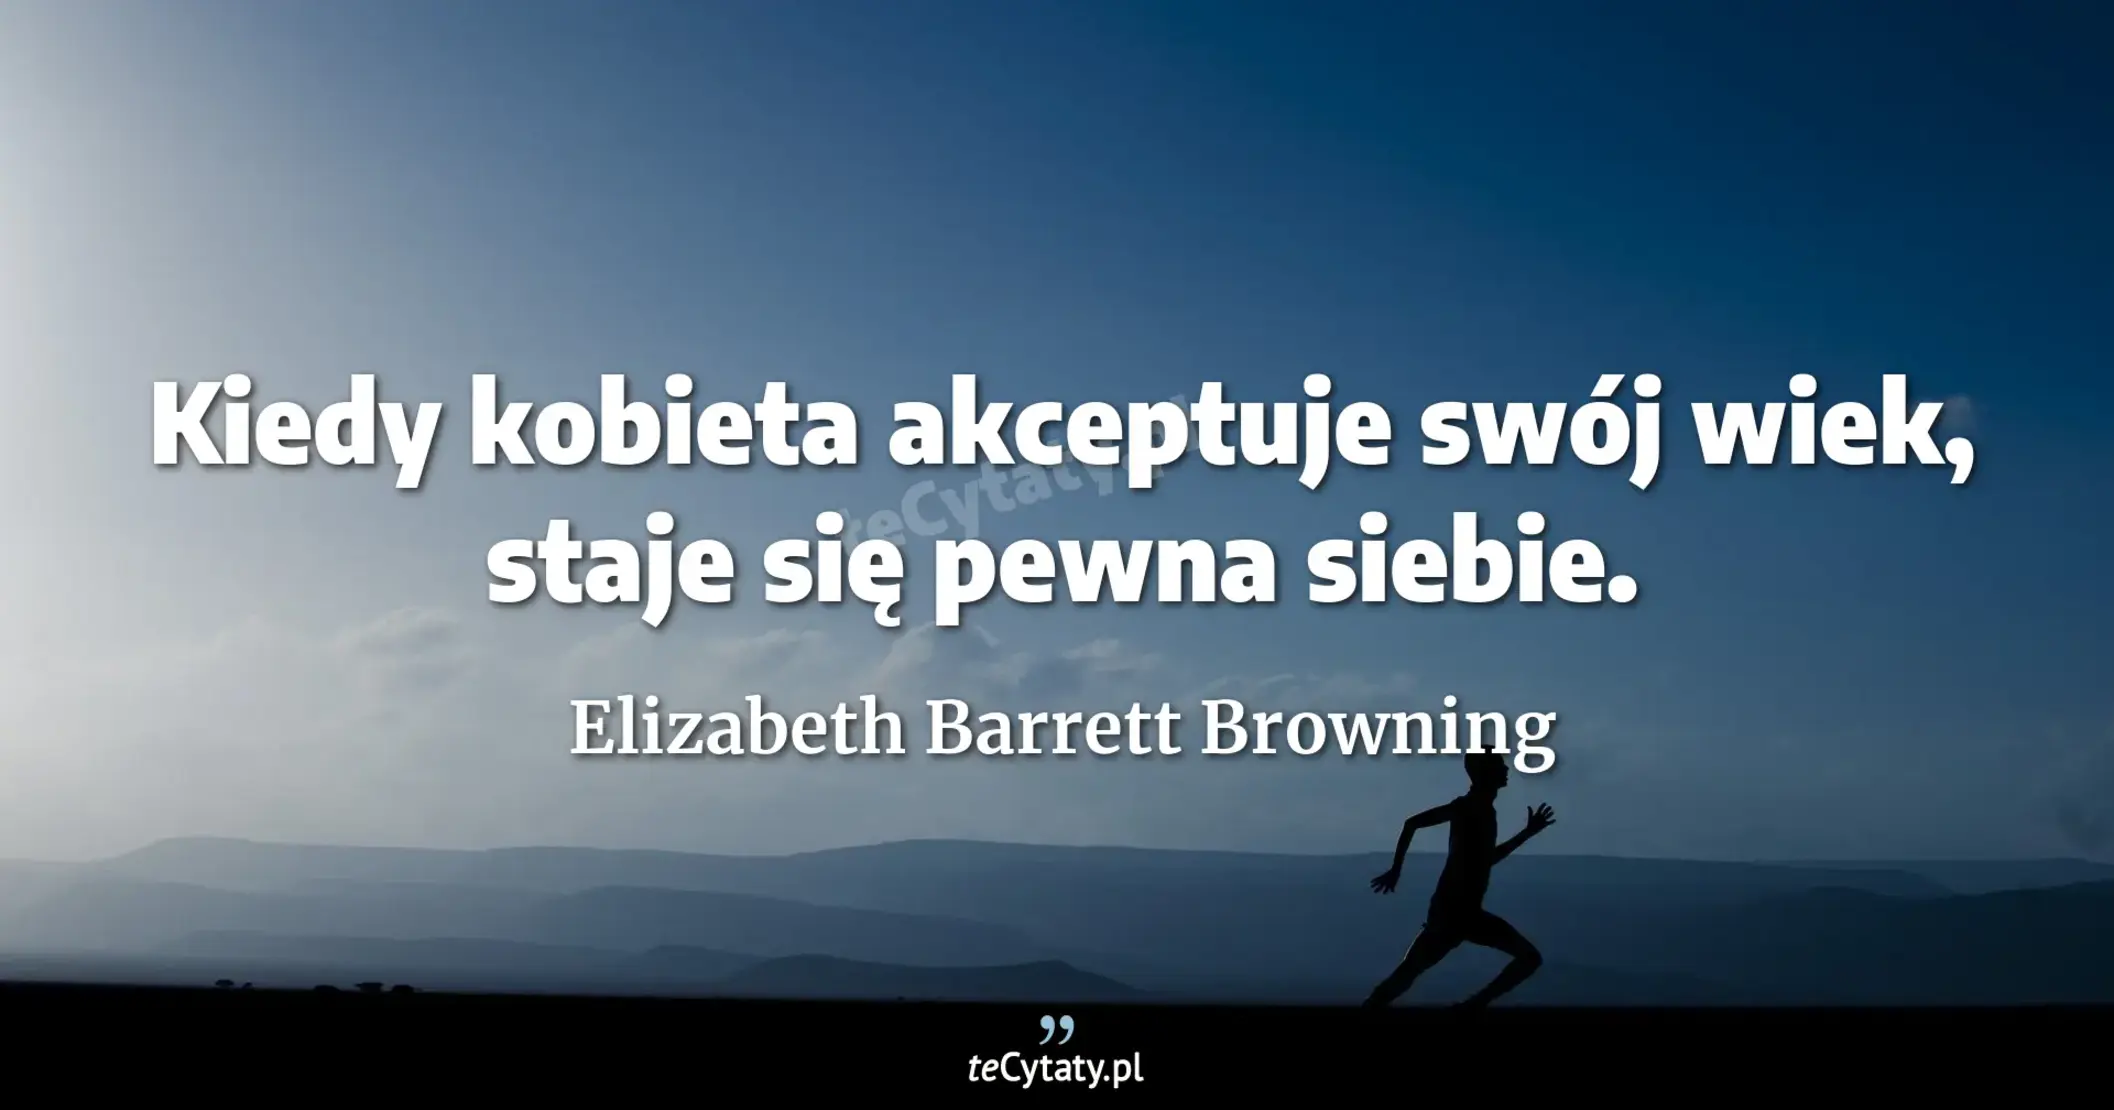 Kiedy kobieta akceptuje swój wiek, staje się pewna siebie. - Elizabeth Barrett Browning